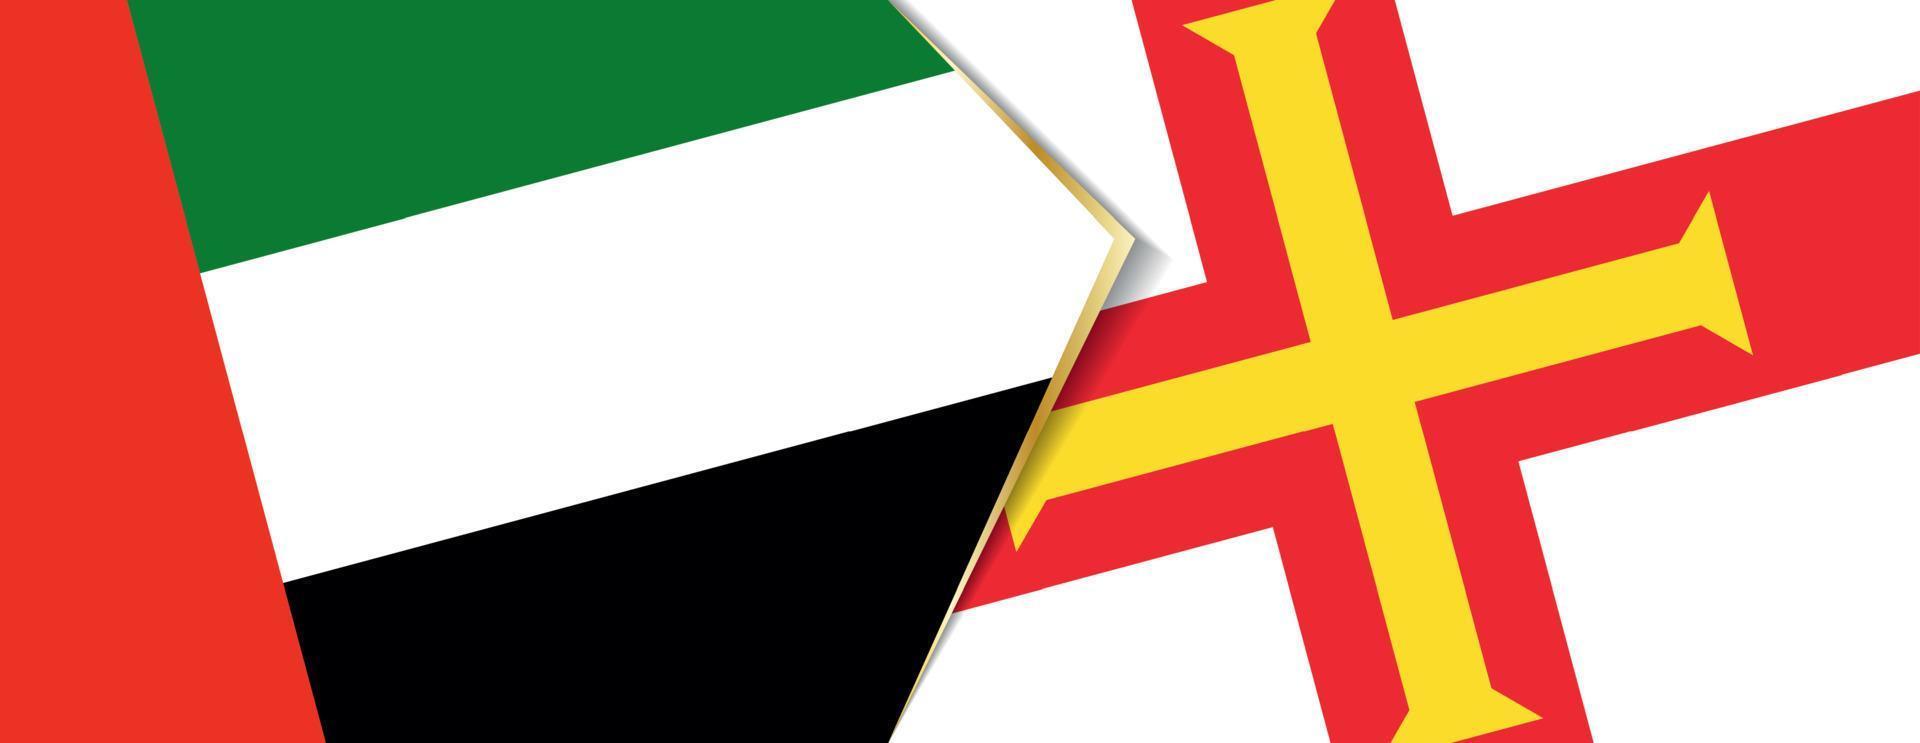 Verenigde Arabisch emiraten en Guernsey vlaggen, twee vector vlaggen.